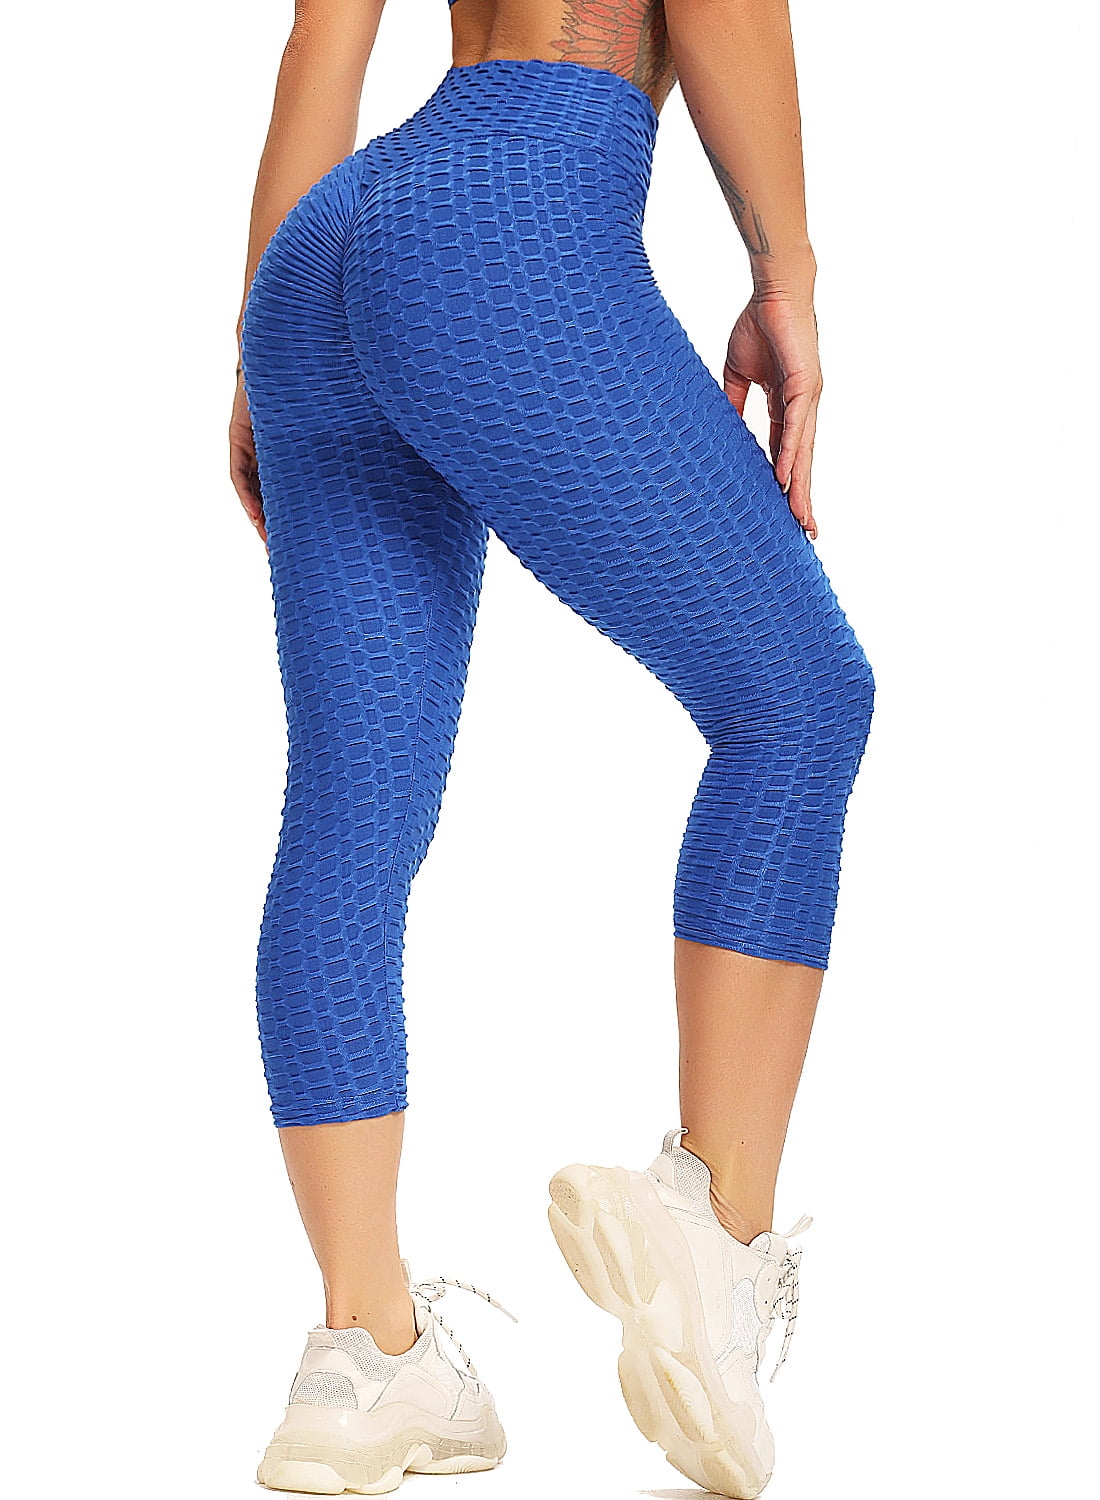 SEASUM Women's Yoga Capris Leggings Butt Lift High Waist Athletic Runnning  Pants Textured Workout Tights Blue XL 